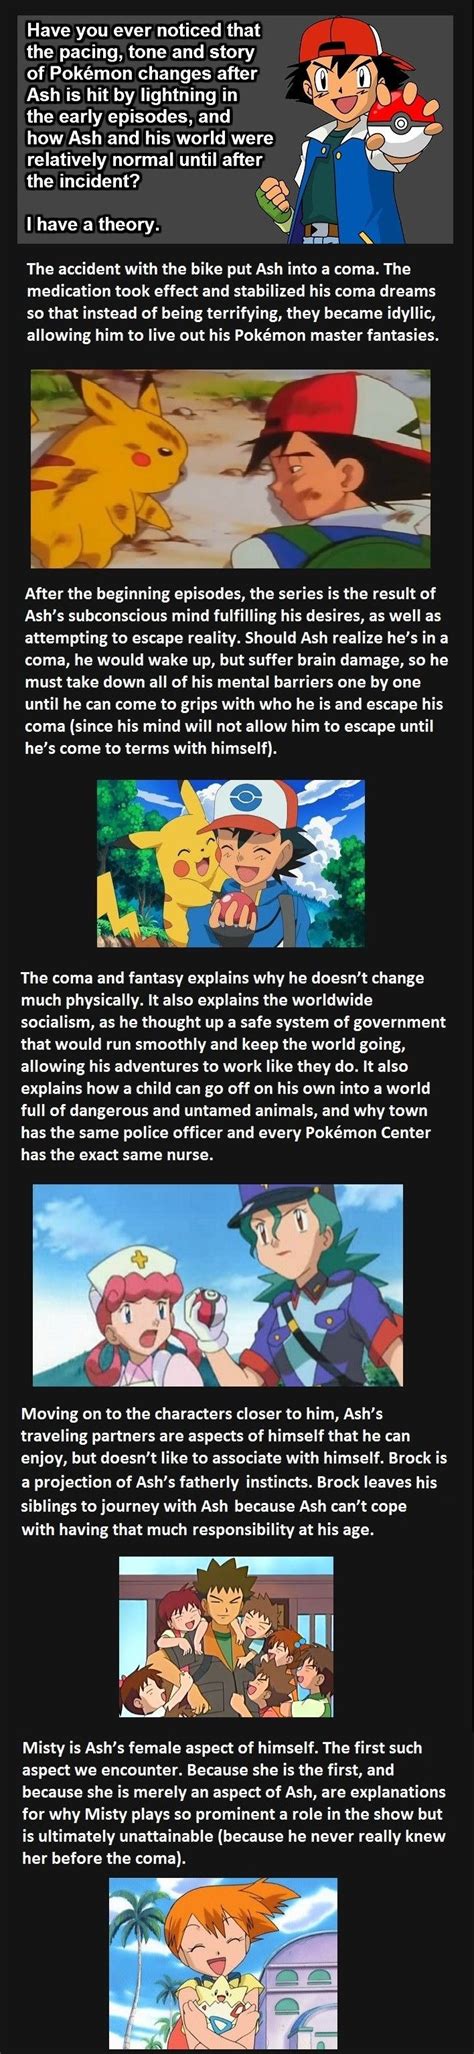 Ashs Coma Pokemon Fan Theory Pokemon Facts Pokemon Fan Theories